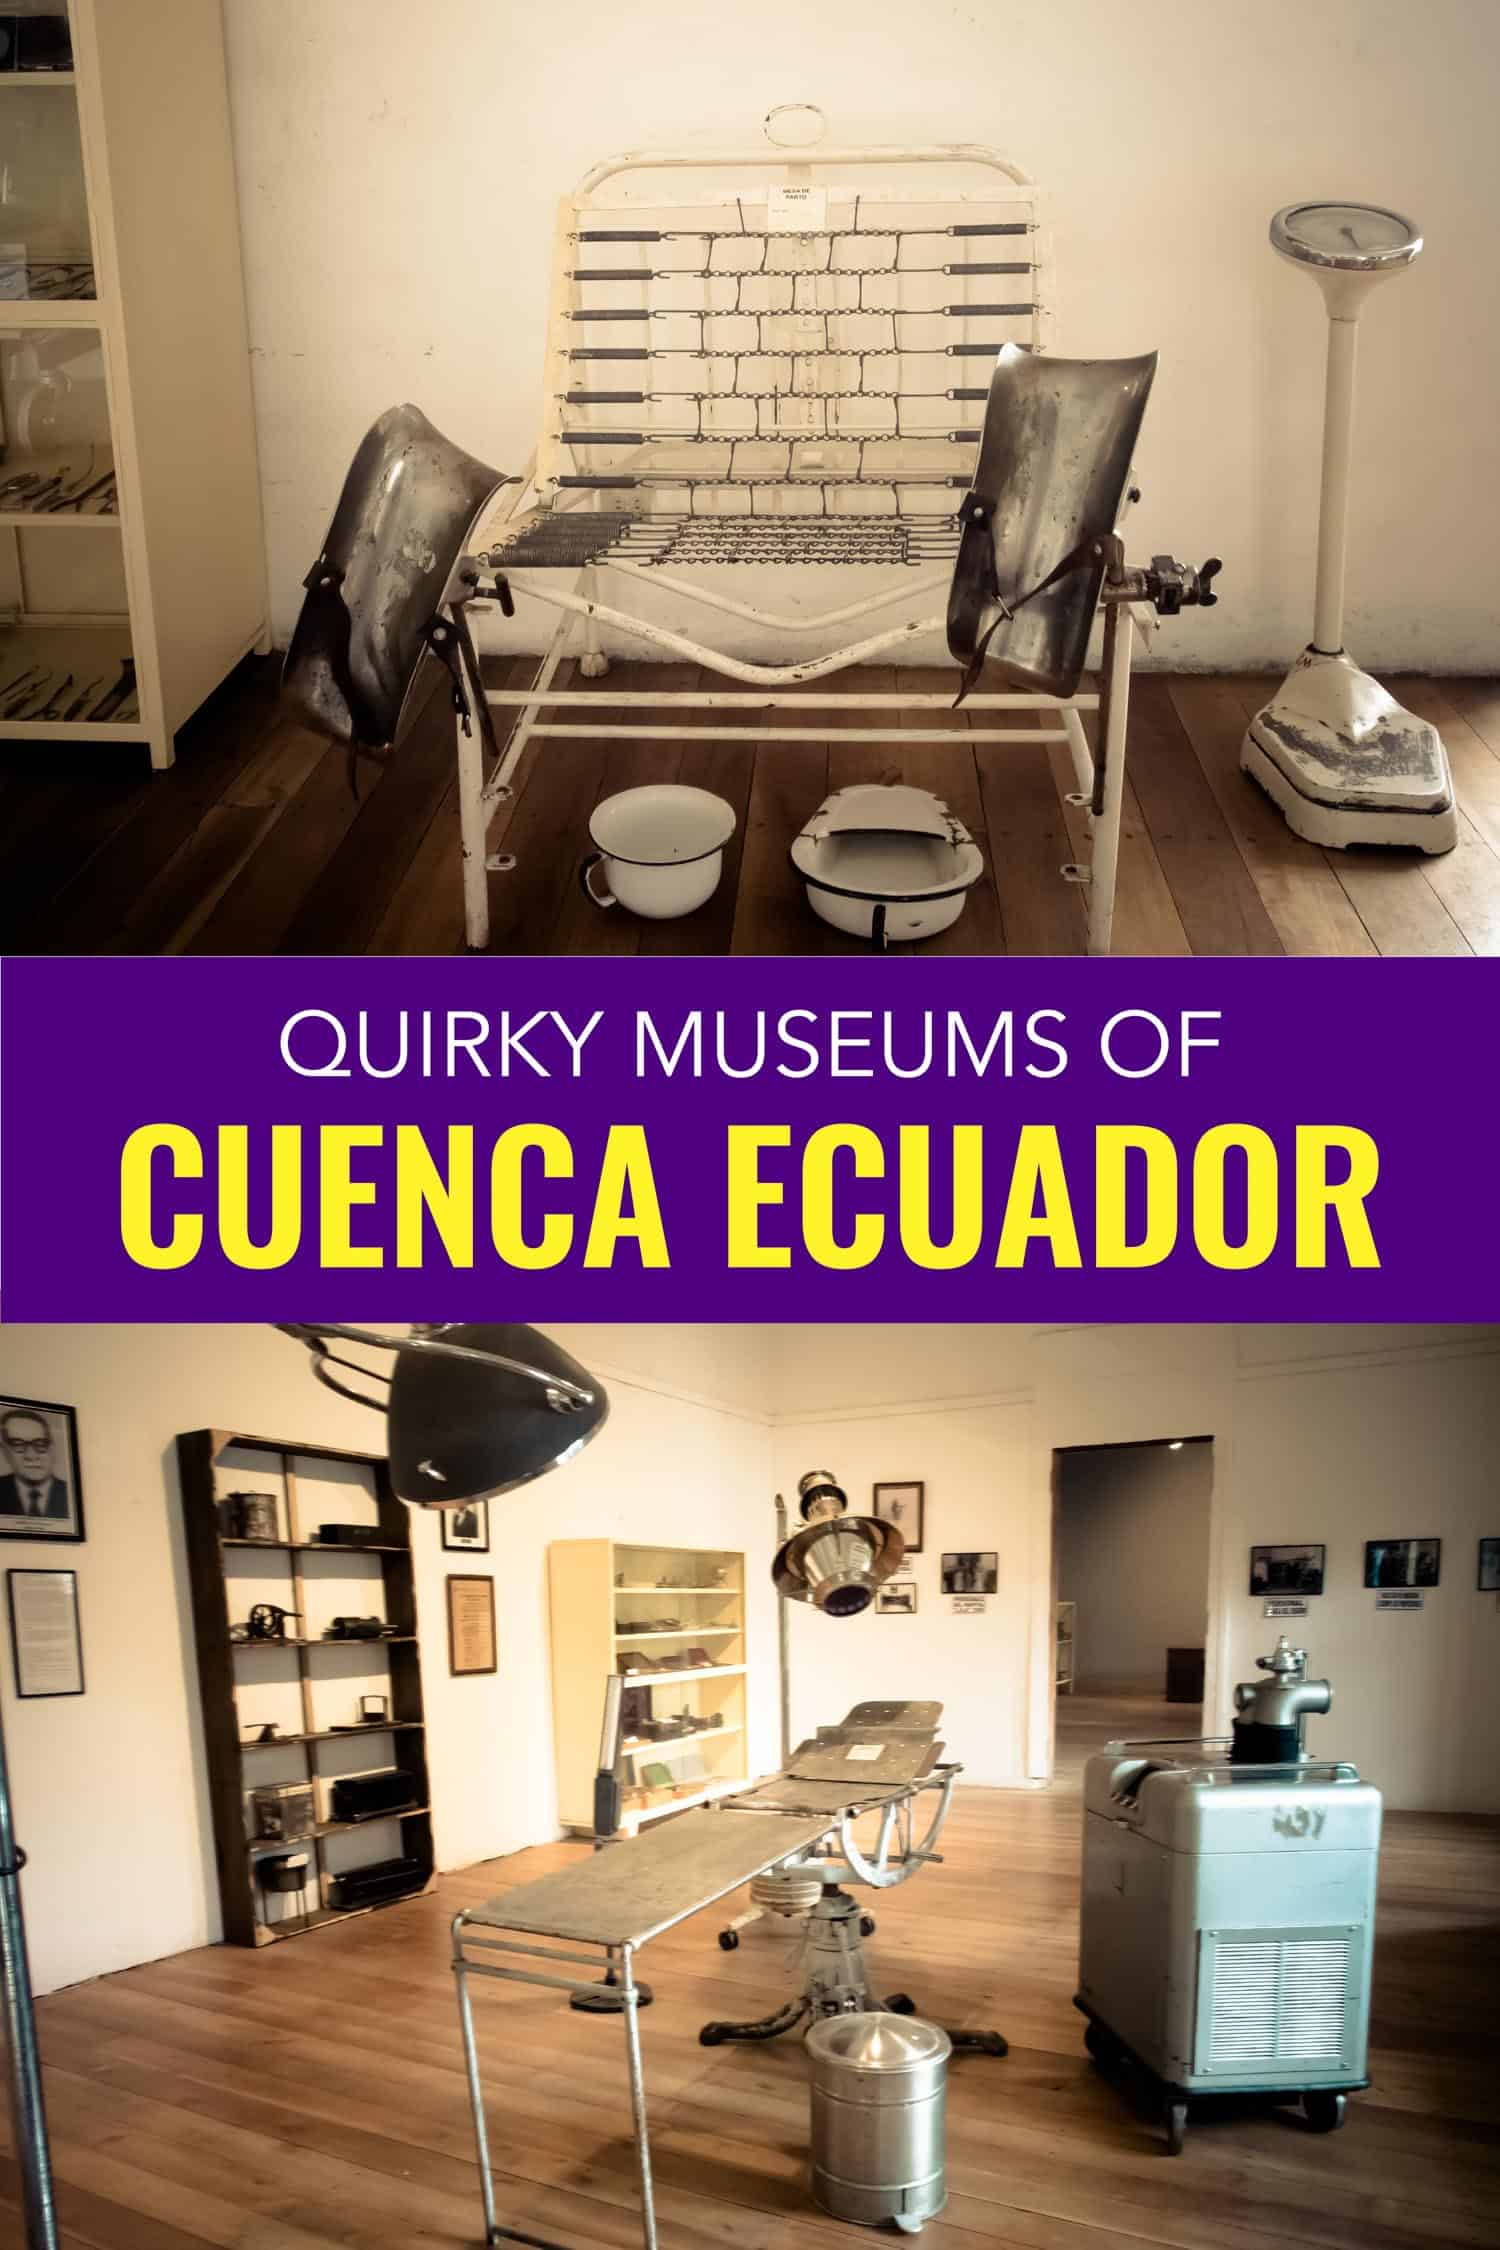 Cuenca museums in Ecuador